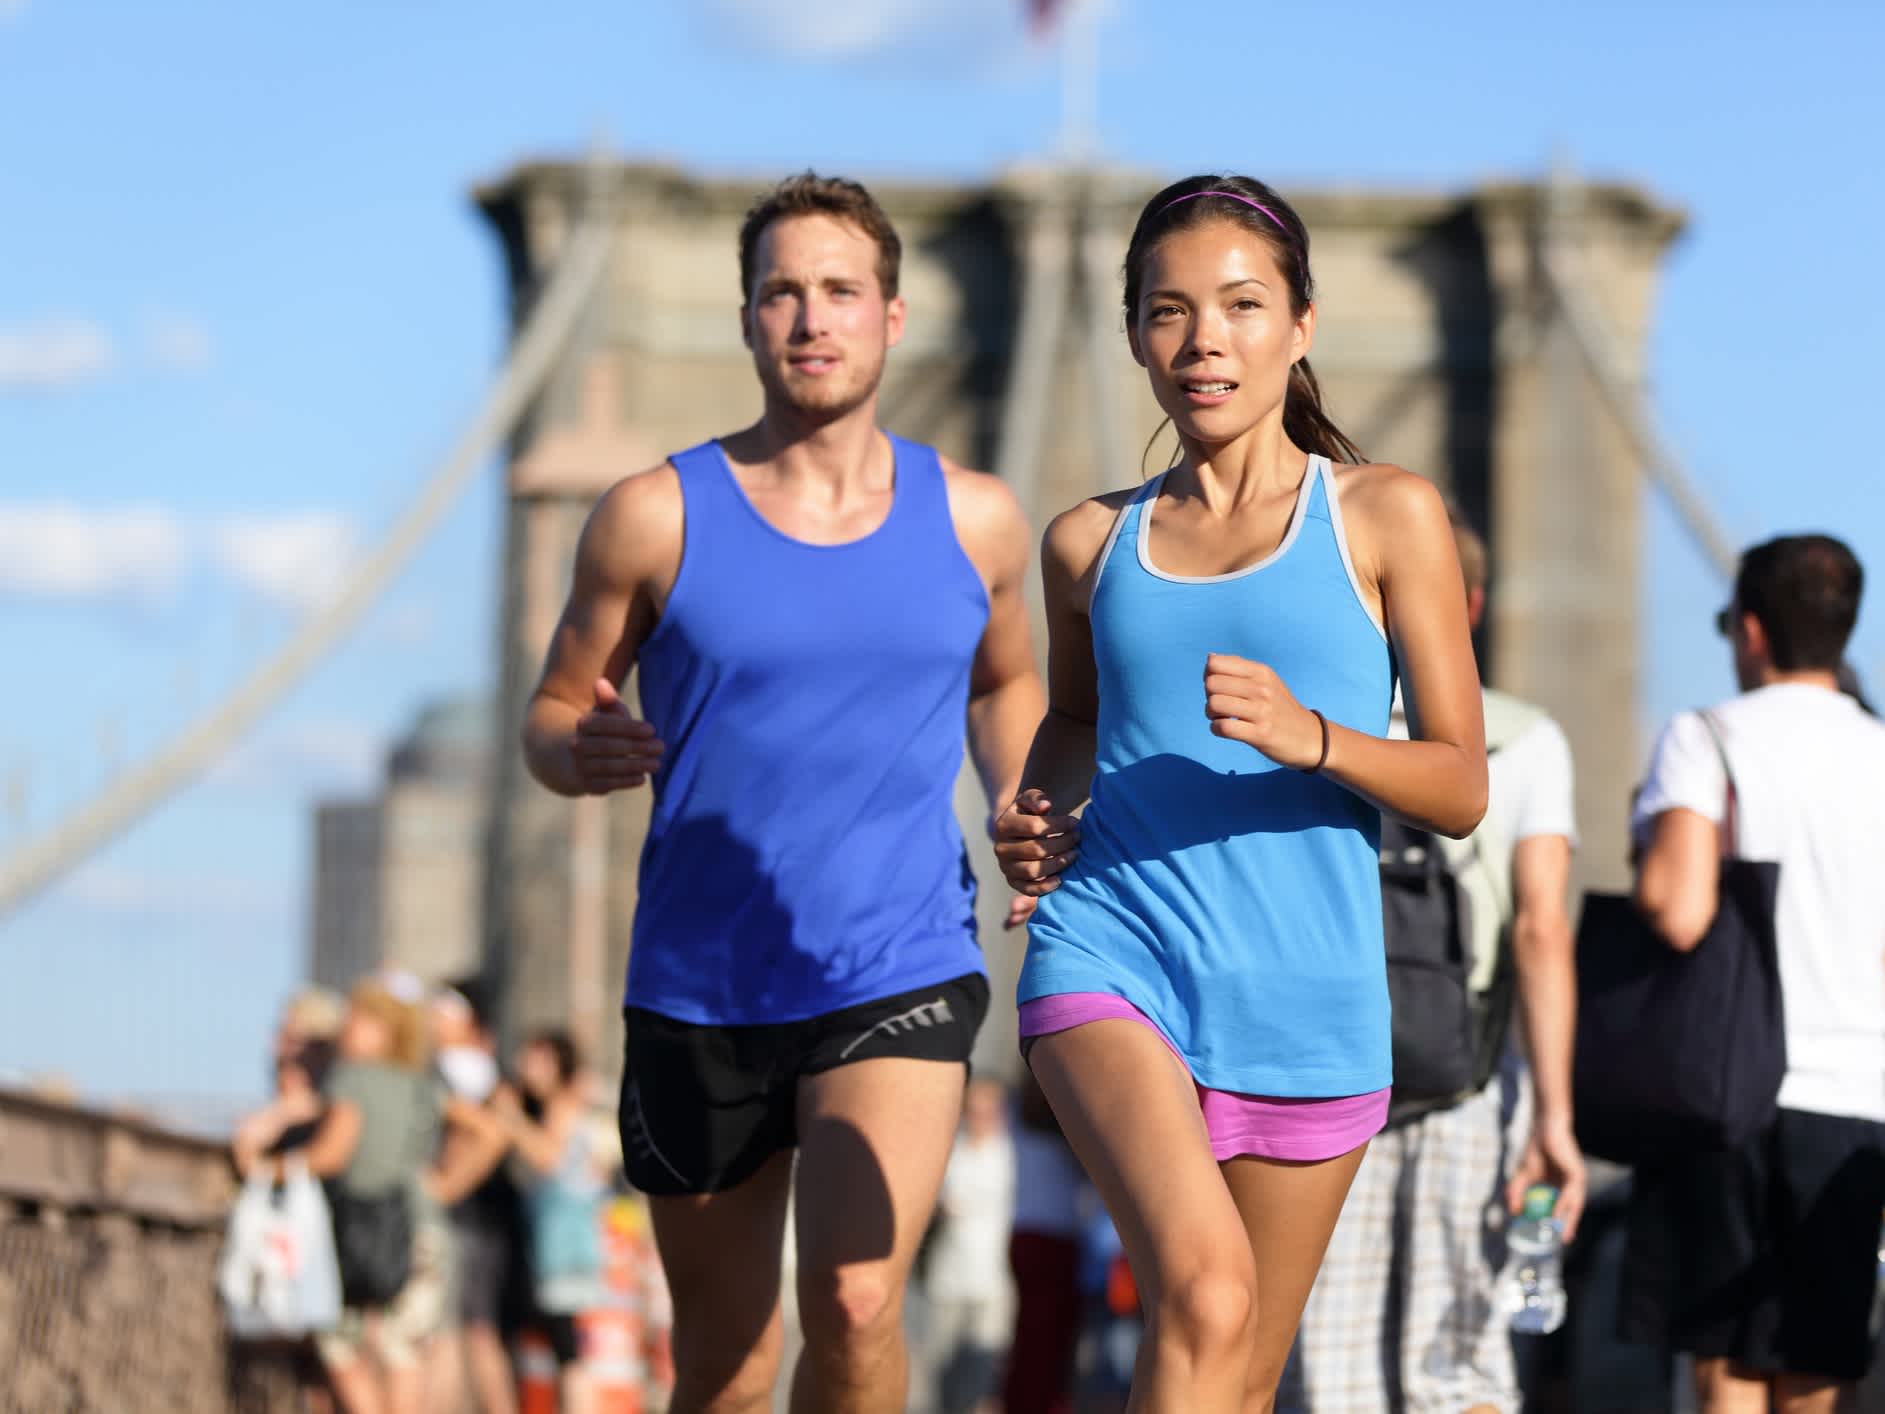 Stadtlaufpaar beim Joggen in New York, USA. 

